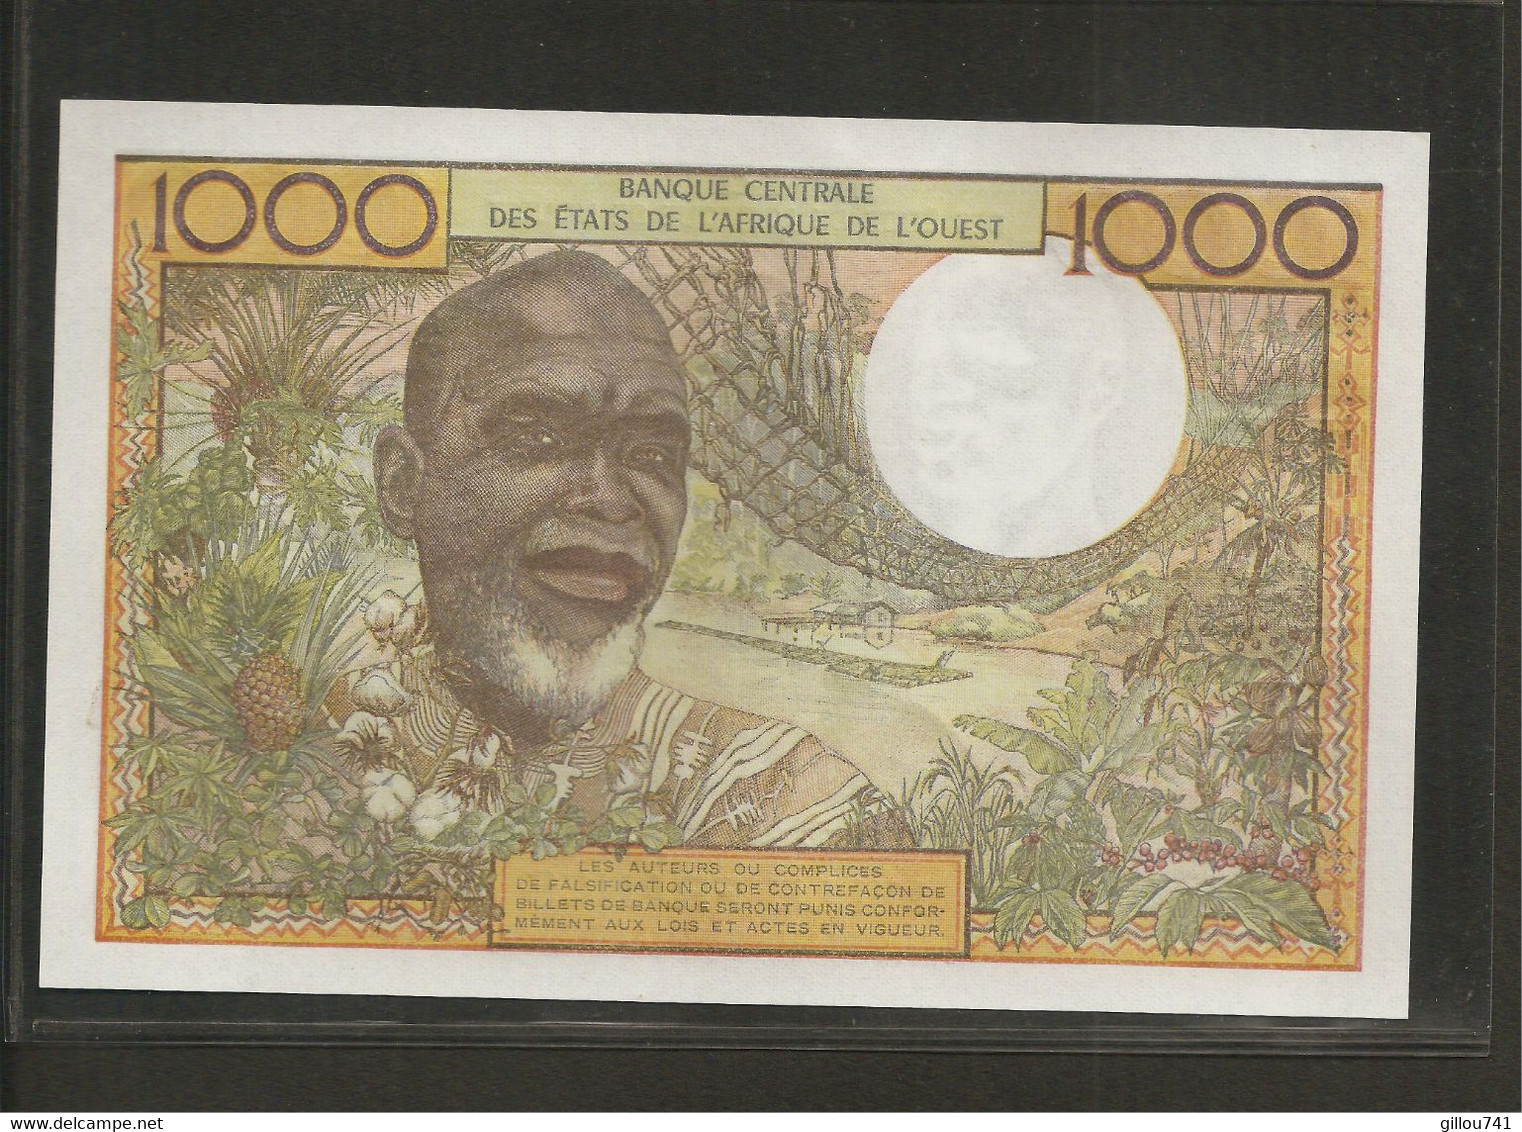 Afrique De L'Ouest (Etats D', 1,000 Francs, C For Burkina Faso - Westafrikanischer Staaten